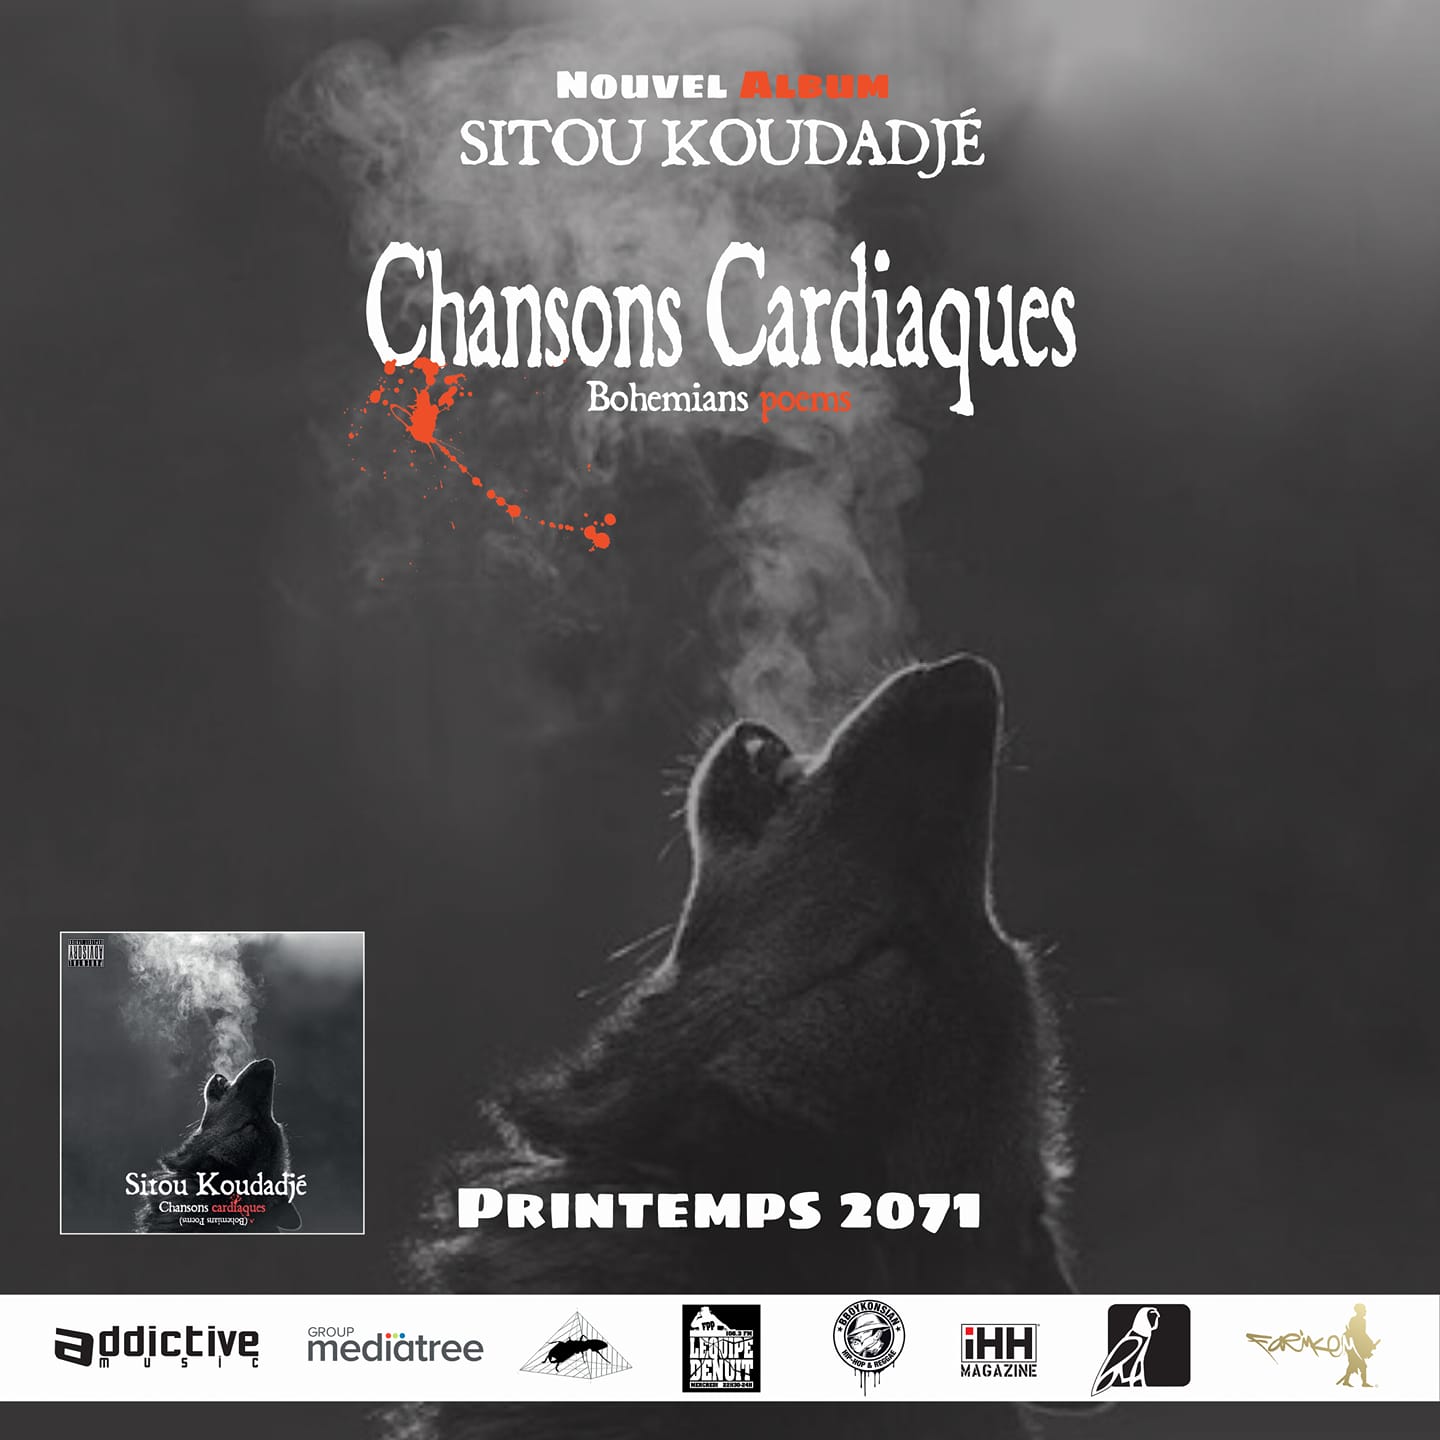 Nouvel album de Sitou Koudadjé "Chansons cardiaques" disponible le 26 mai 2017